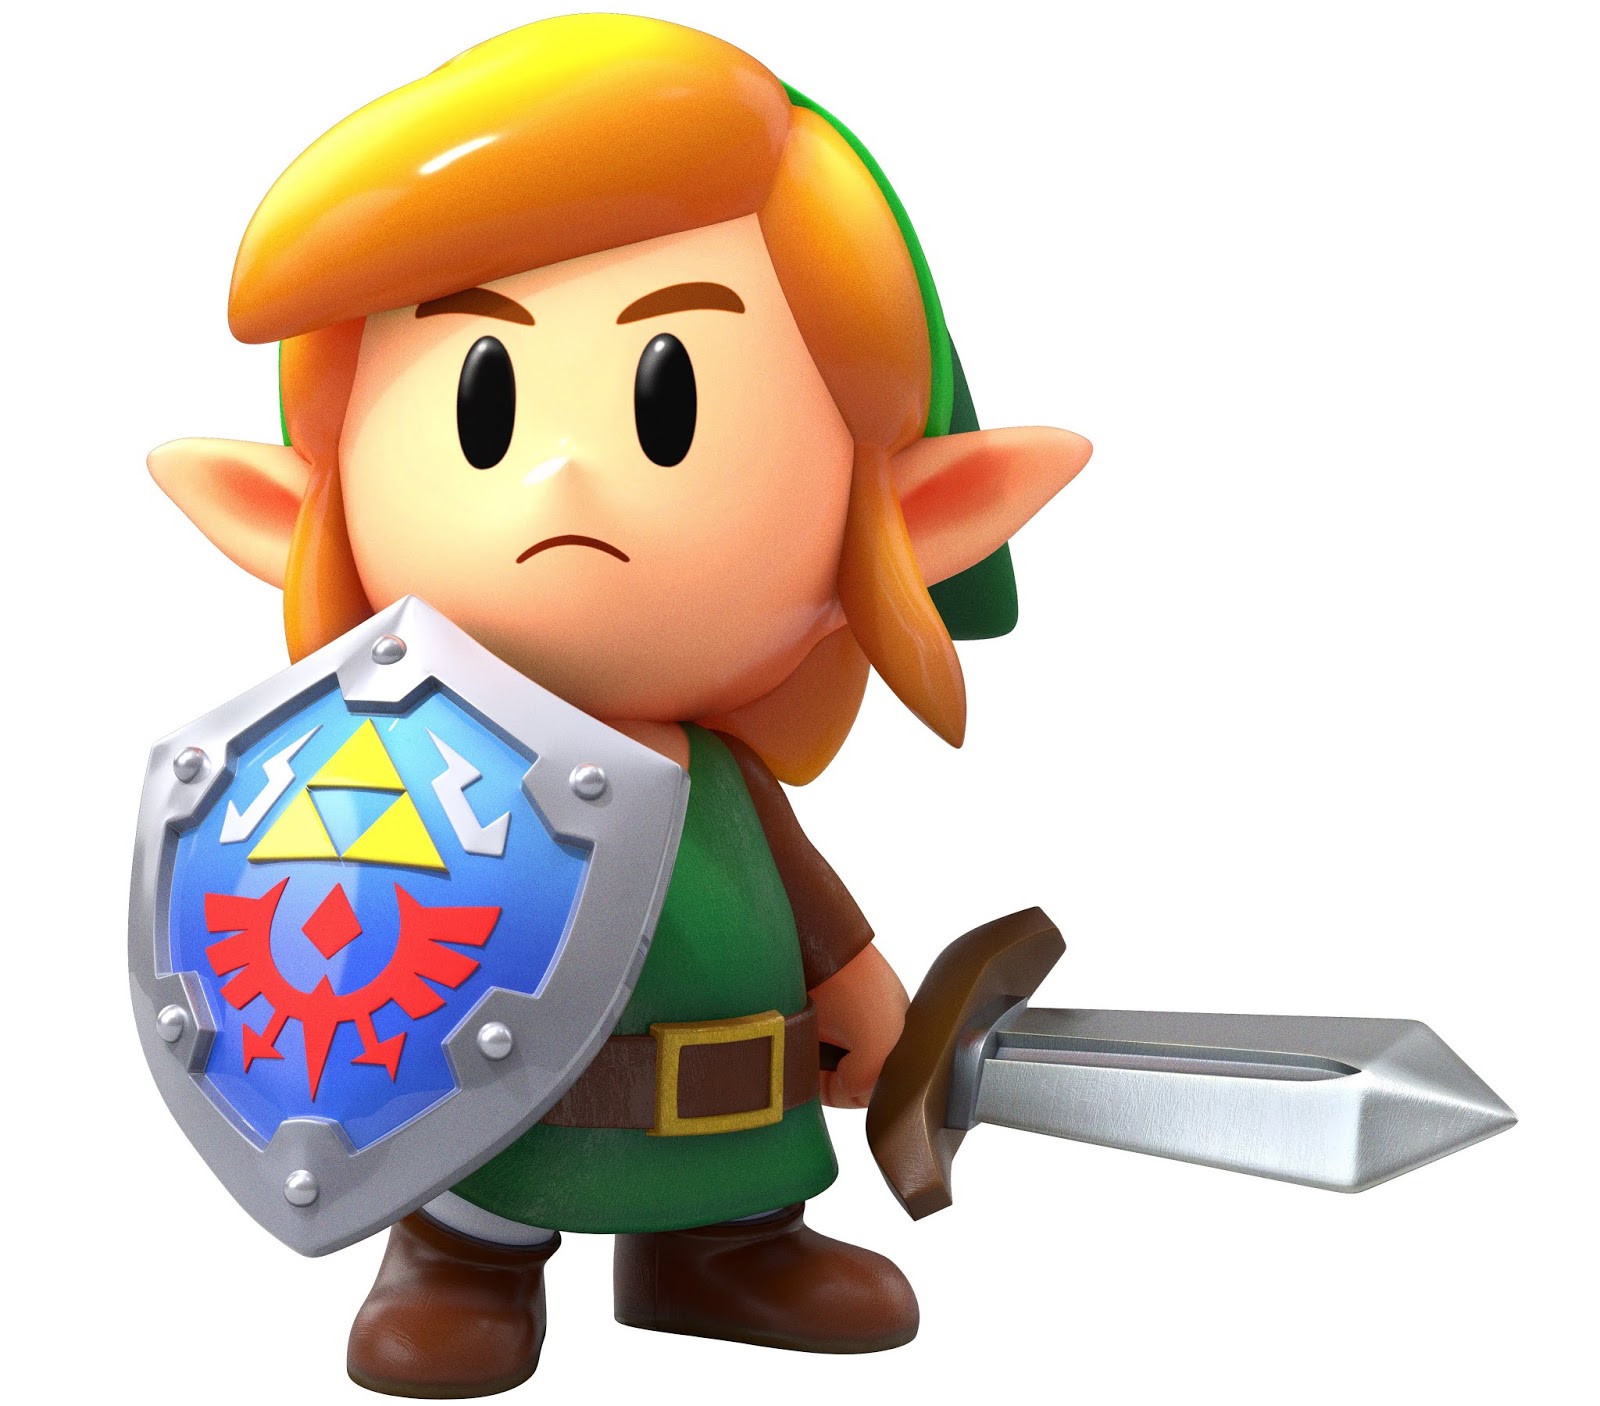 Jogos da Nintendo como 'Mario' e 'Zelda' vão ser lançados no